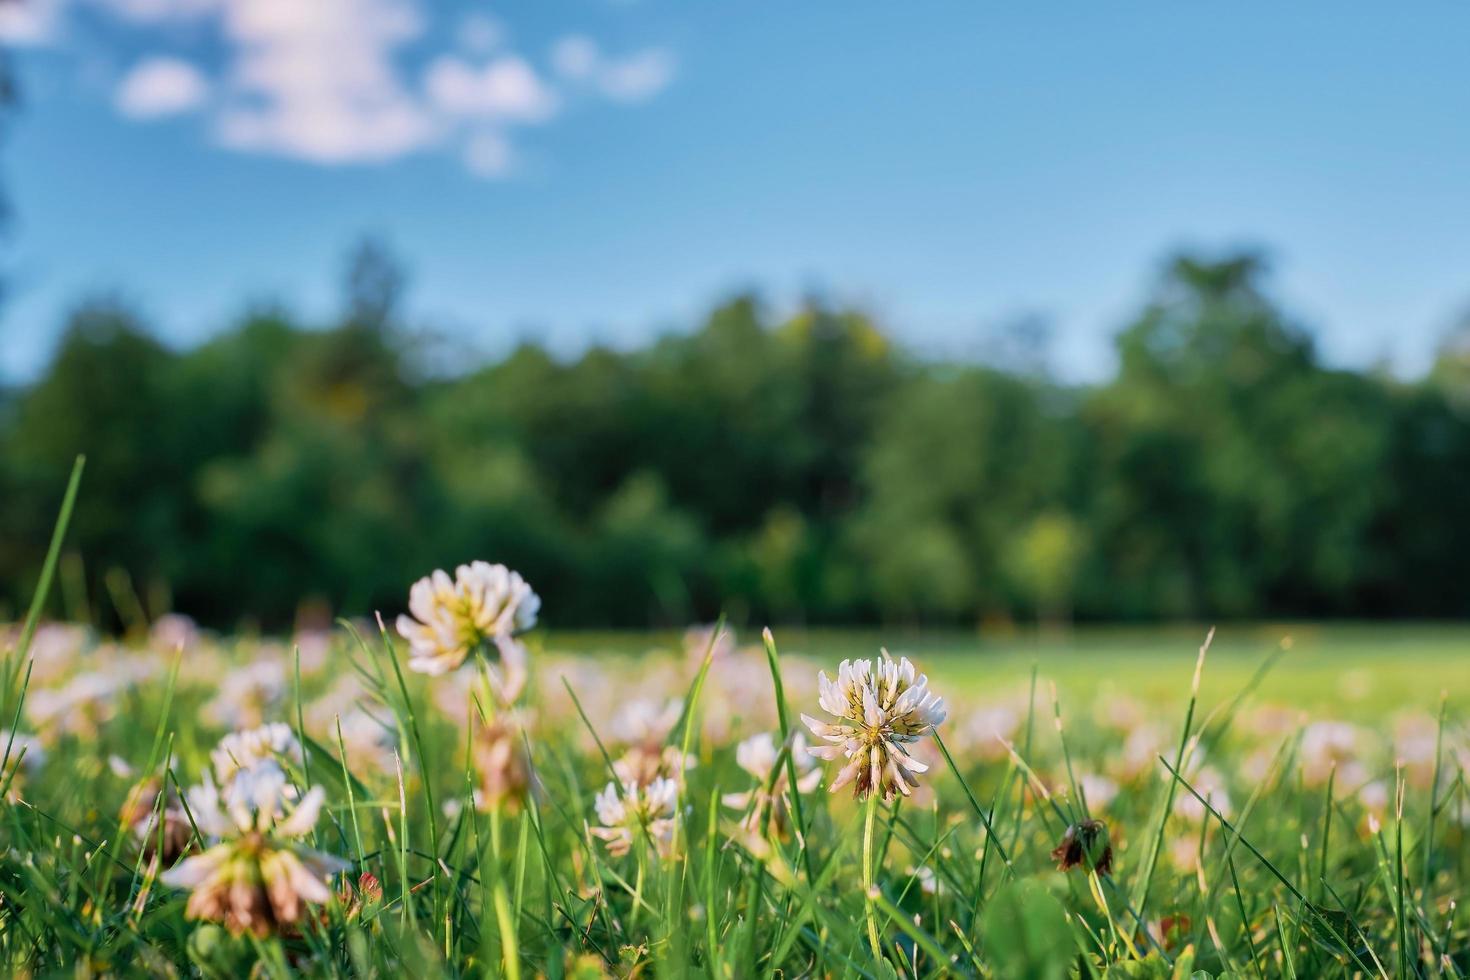 hermoso paisaje panorámico natural de verano o primavera con flores de trébol en un prado contra un cielo azul con nubes blancas y una línea de bosque. brillante imagen artística expresiva de la naturaleza de verano. foto